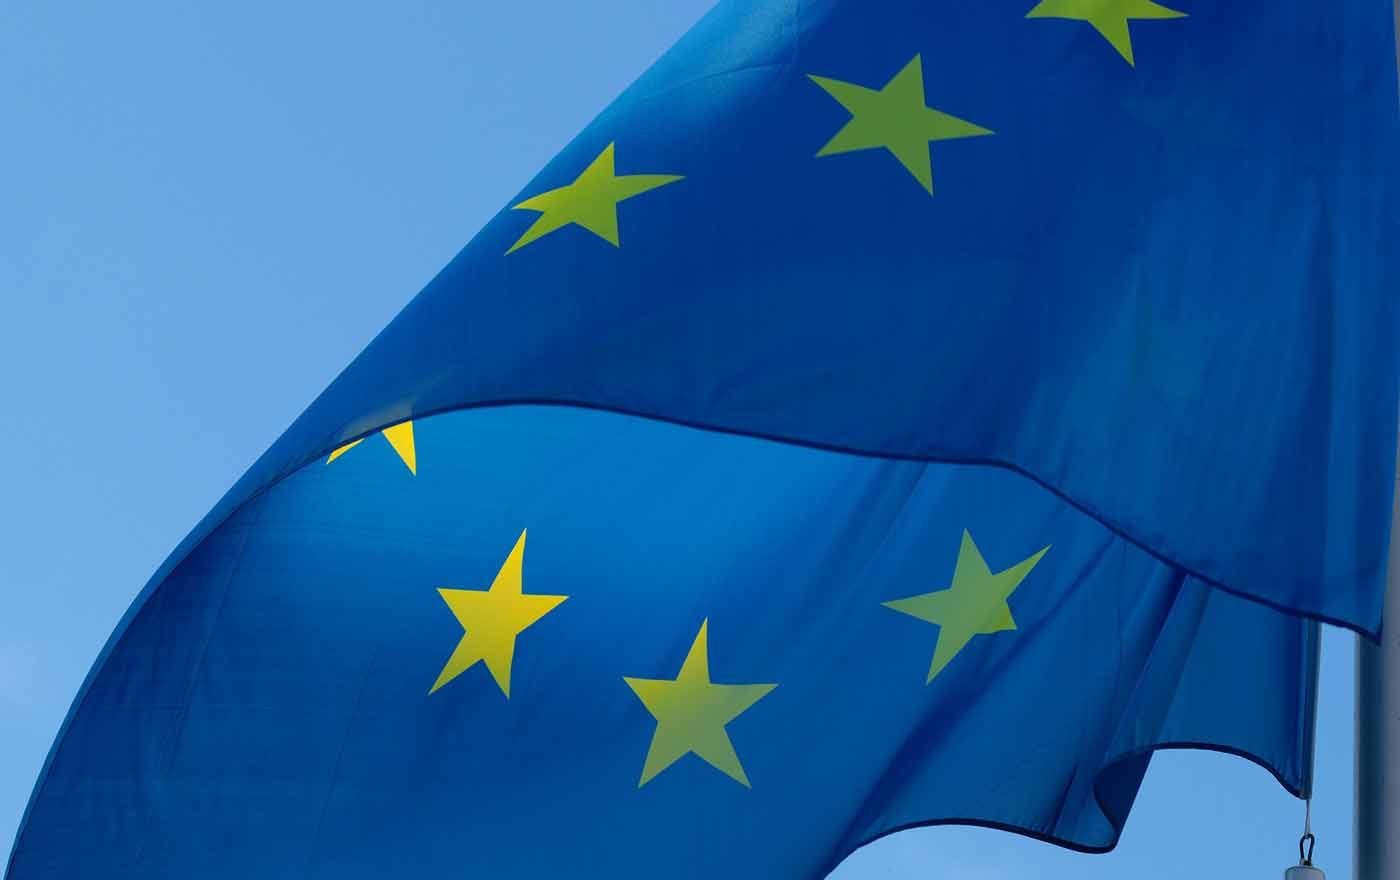 Am 26. Mai wird gewählt, bis dahin über Europa diskutiert. Foto: pixabay